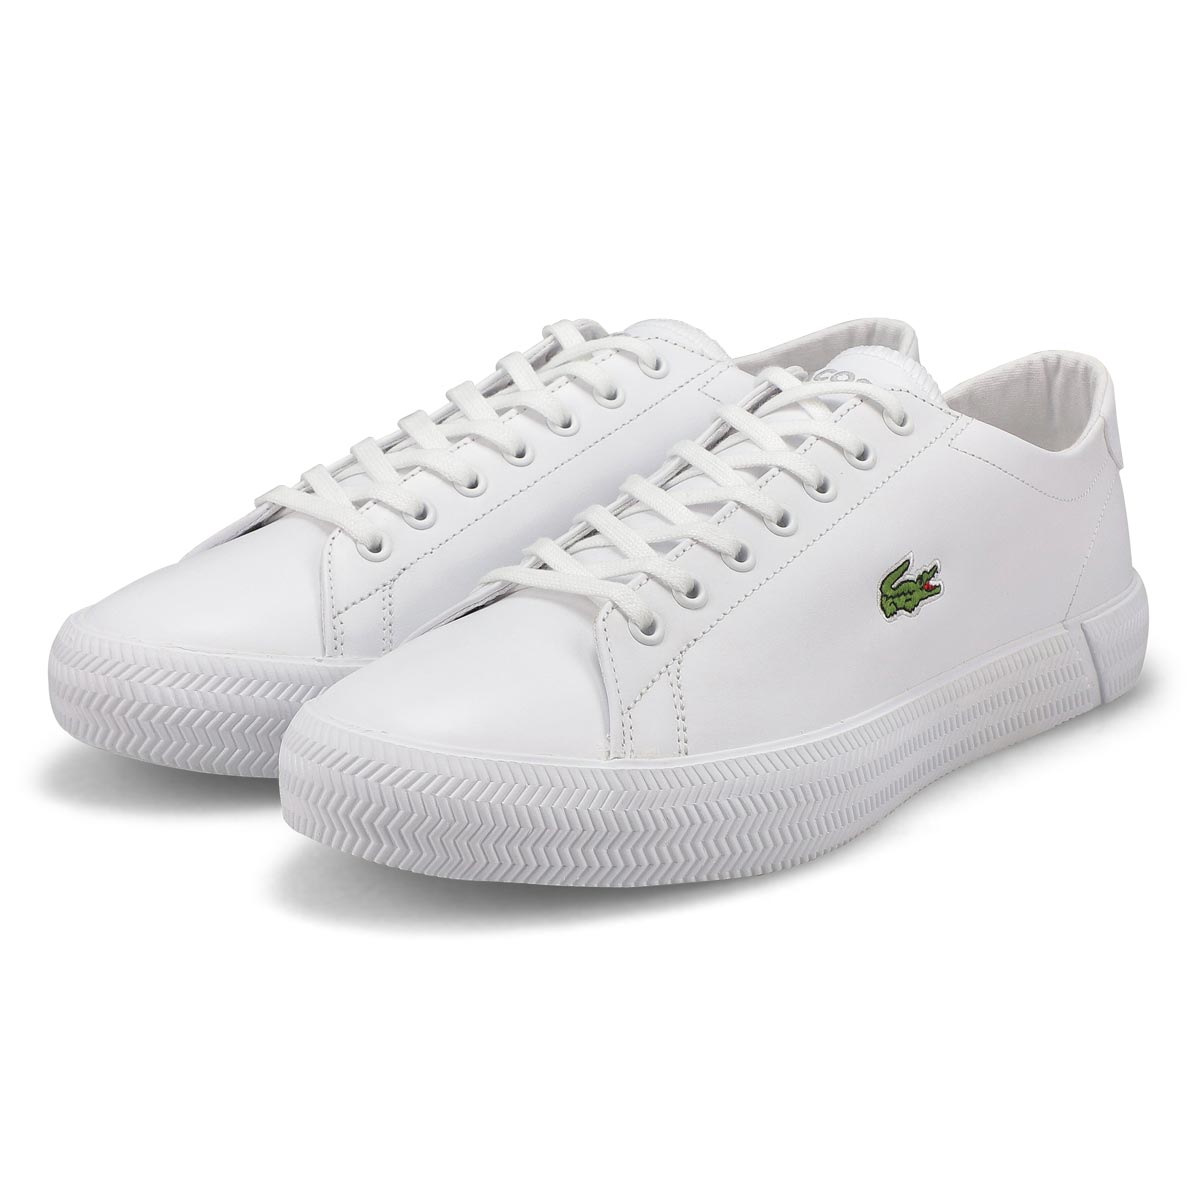 Men's Gripshot BL Leather Sneaker - White/White